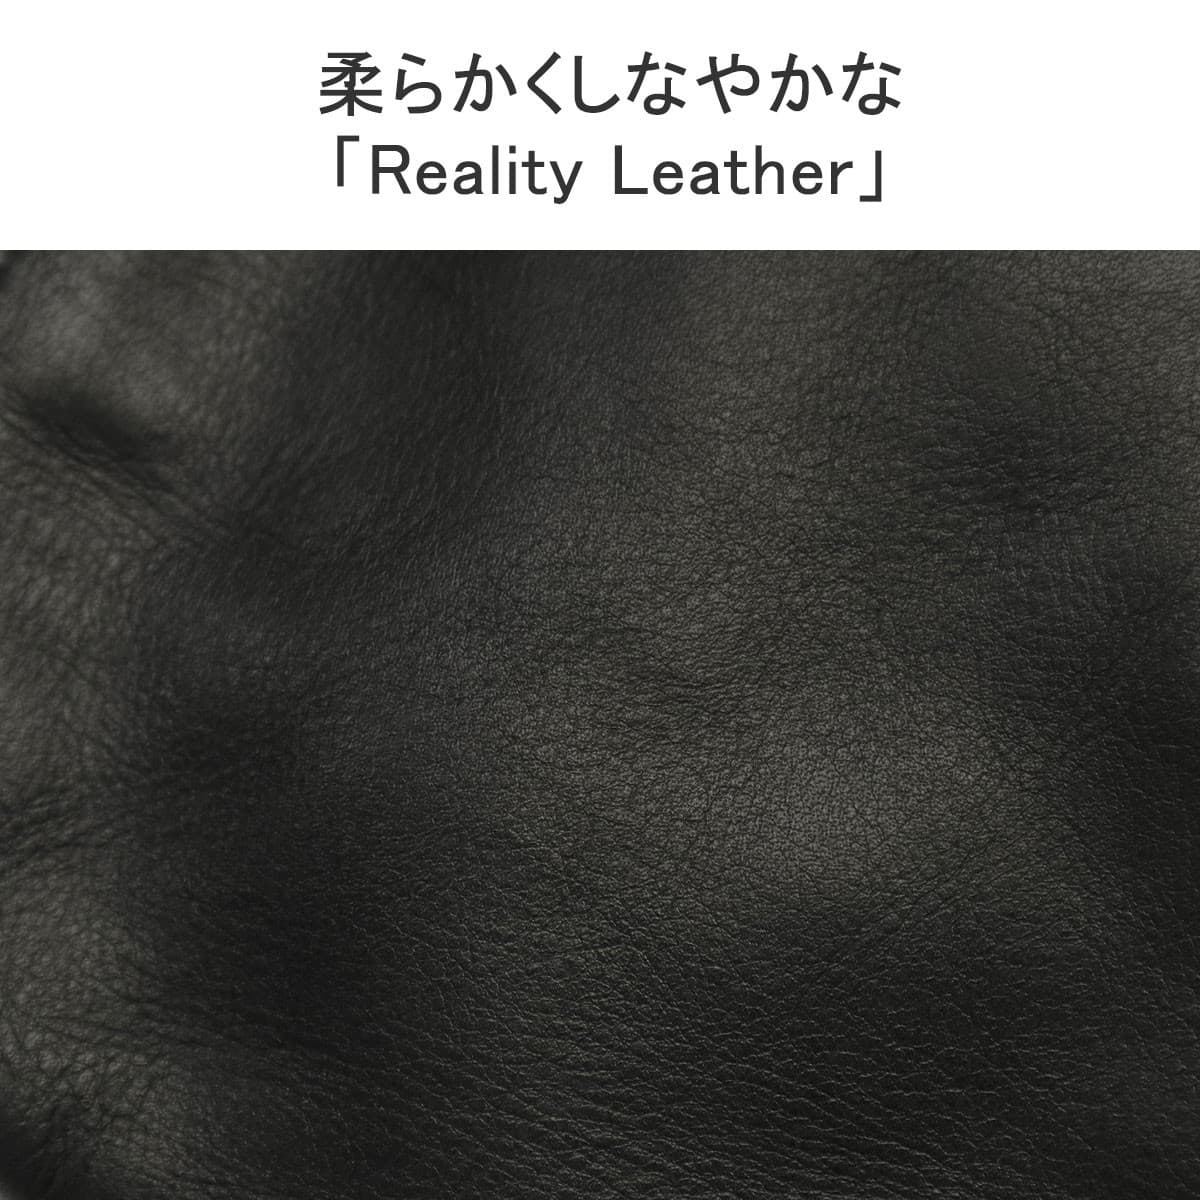 正規取扱店】aniary アニアリ Reality Leather リアリティレザー